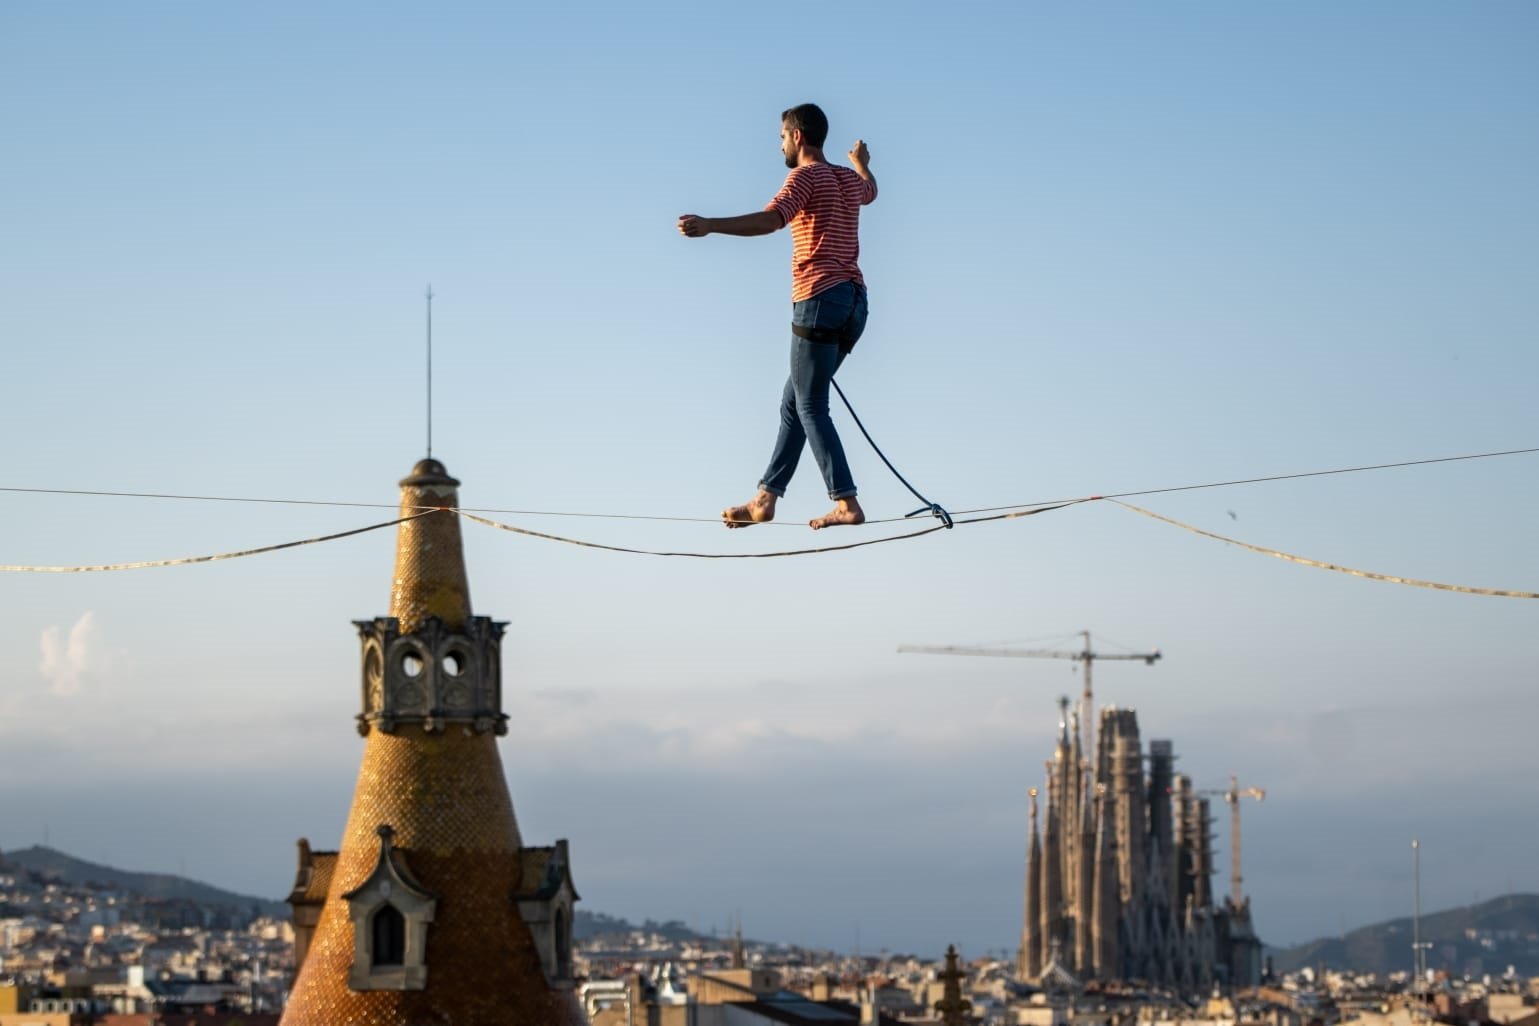 El funambulista Nathan Paulin cruza el paseo de Gràcia a 70 metros de altura | VÍDEO